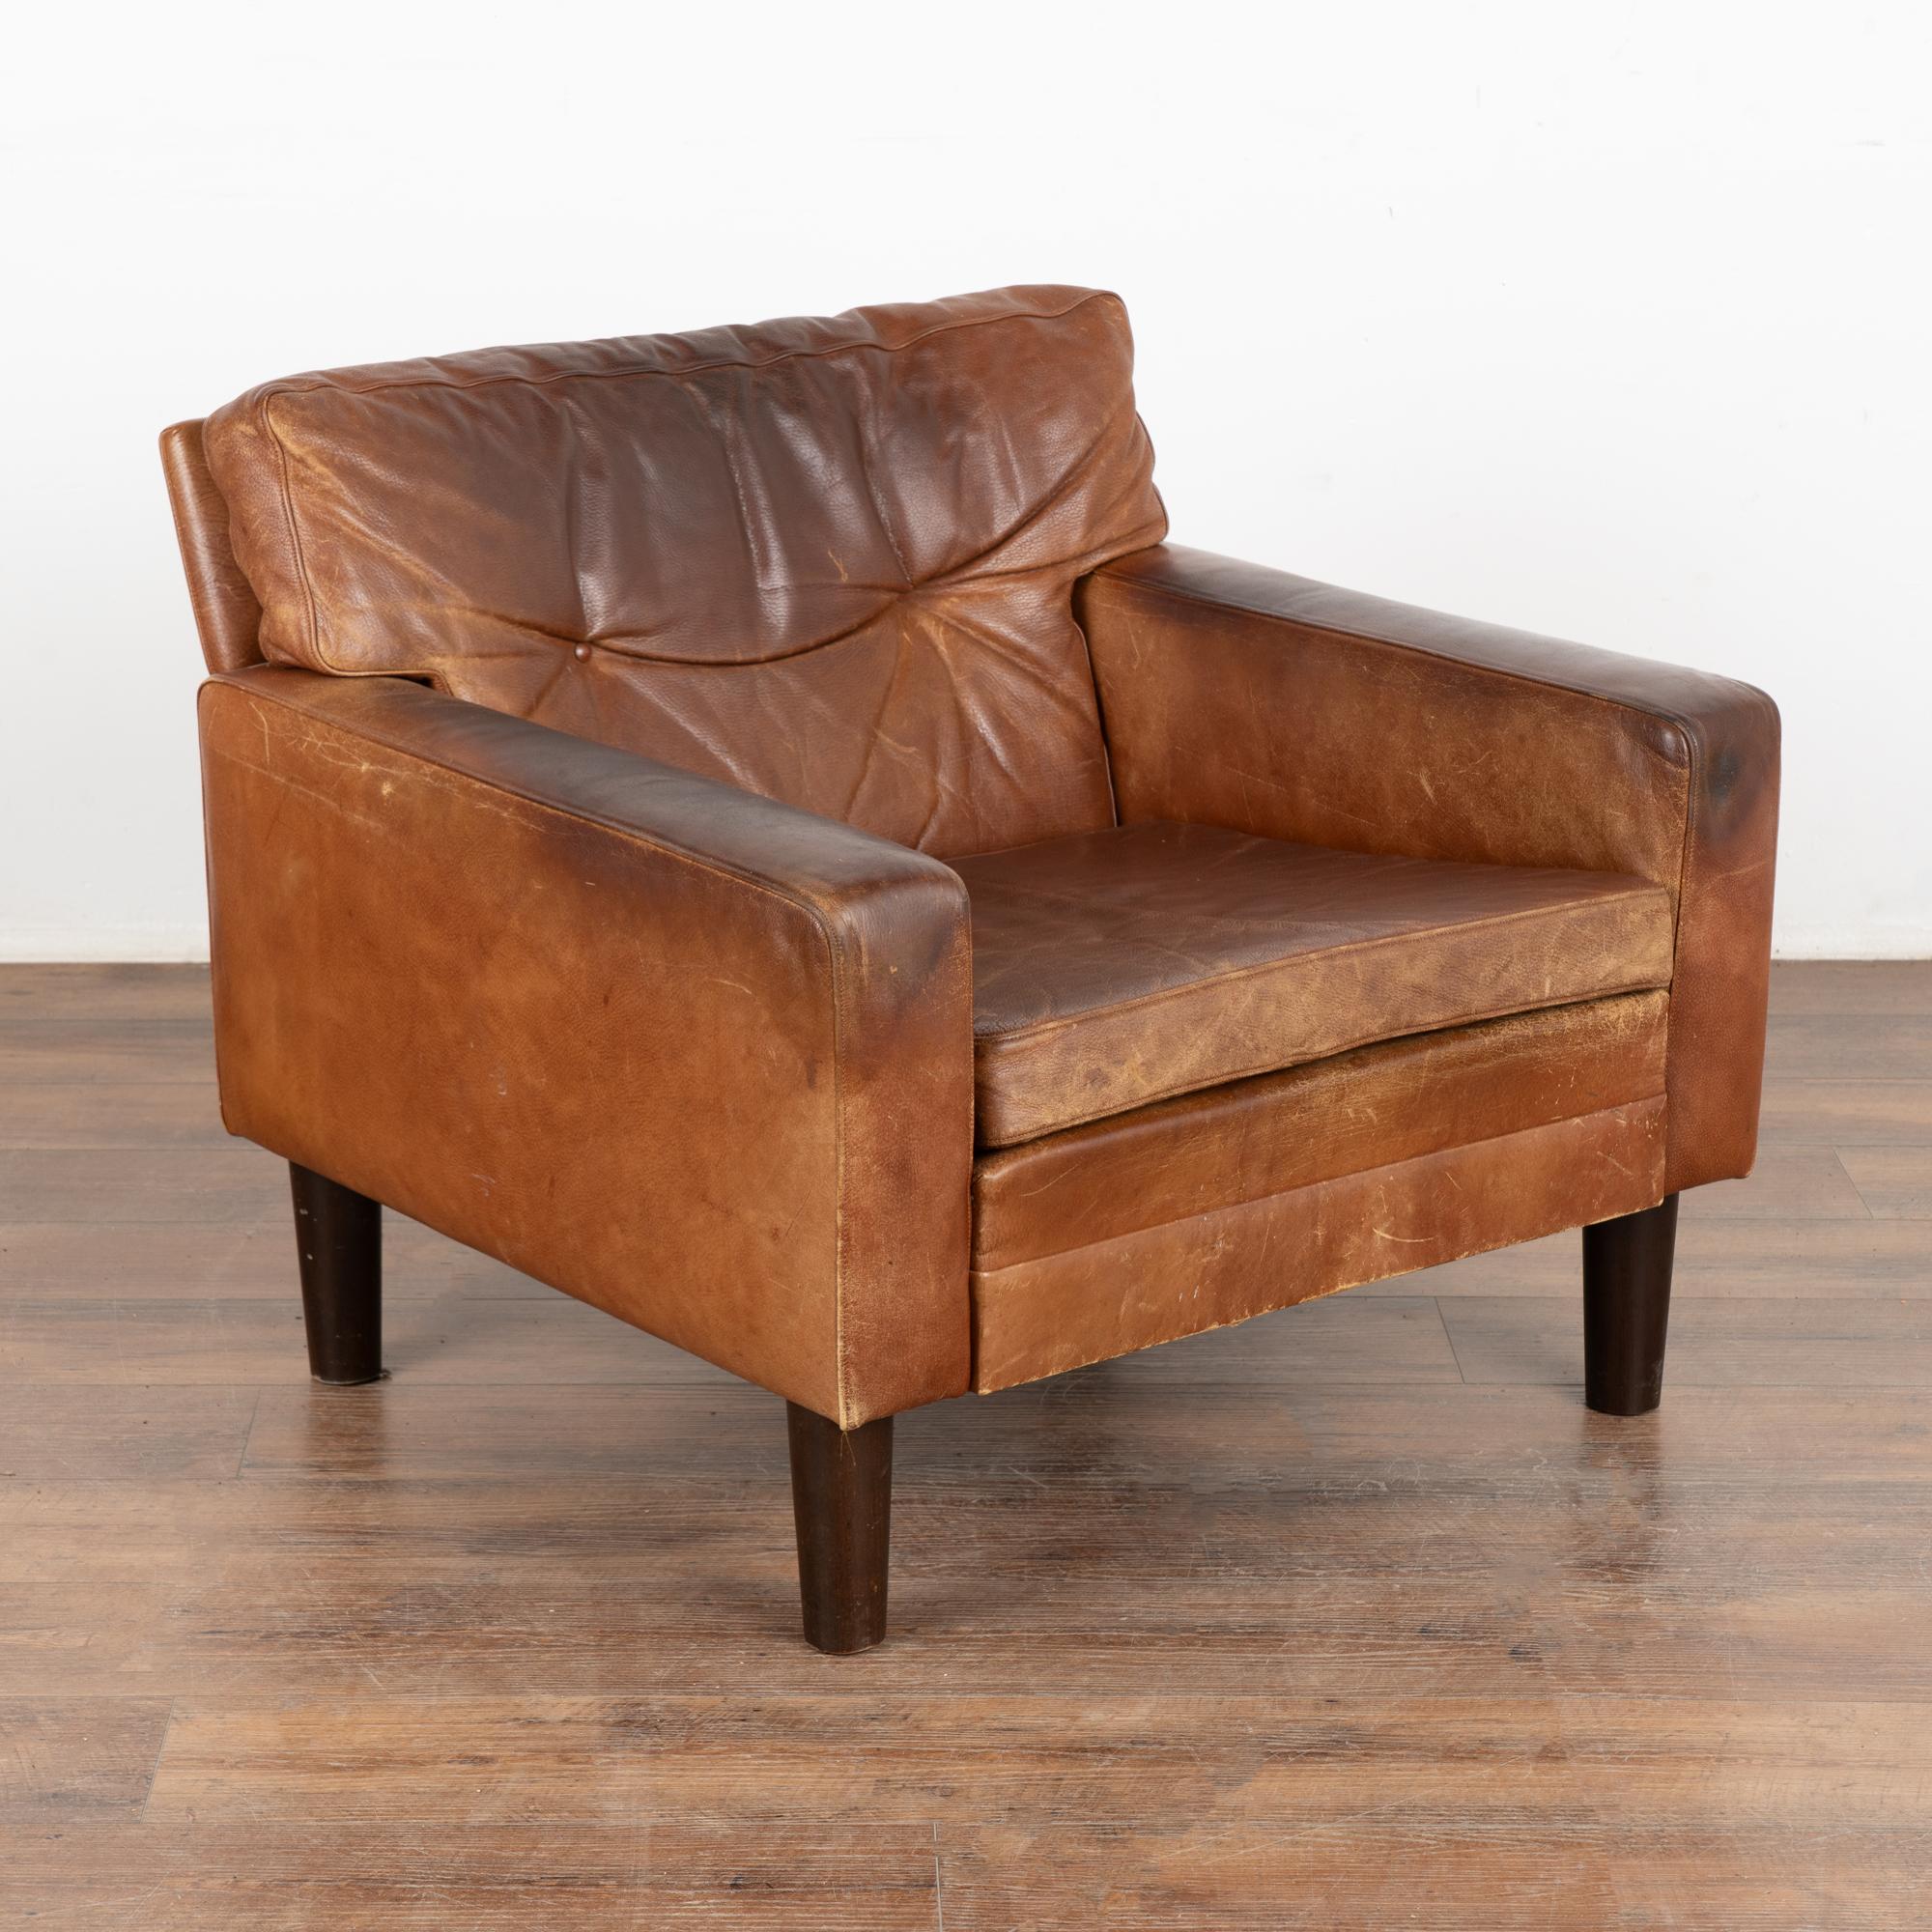 Moderner brauner Ledersessel aus der Mitte des Jahrhunderts, der auf harten Holzfüßen ruht.
Kissen mit Reißverschluss abnehmbar.
Verkauft in gebrauchtem Vintage-Zustand; diese Stühle sitzen niedrig. Das Leder weist typische alters- und